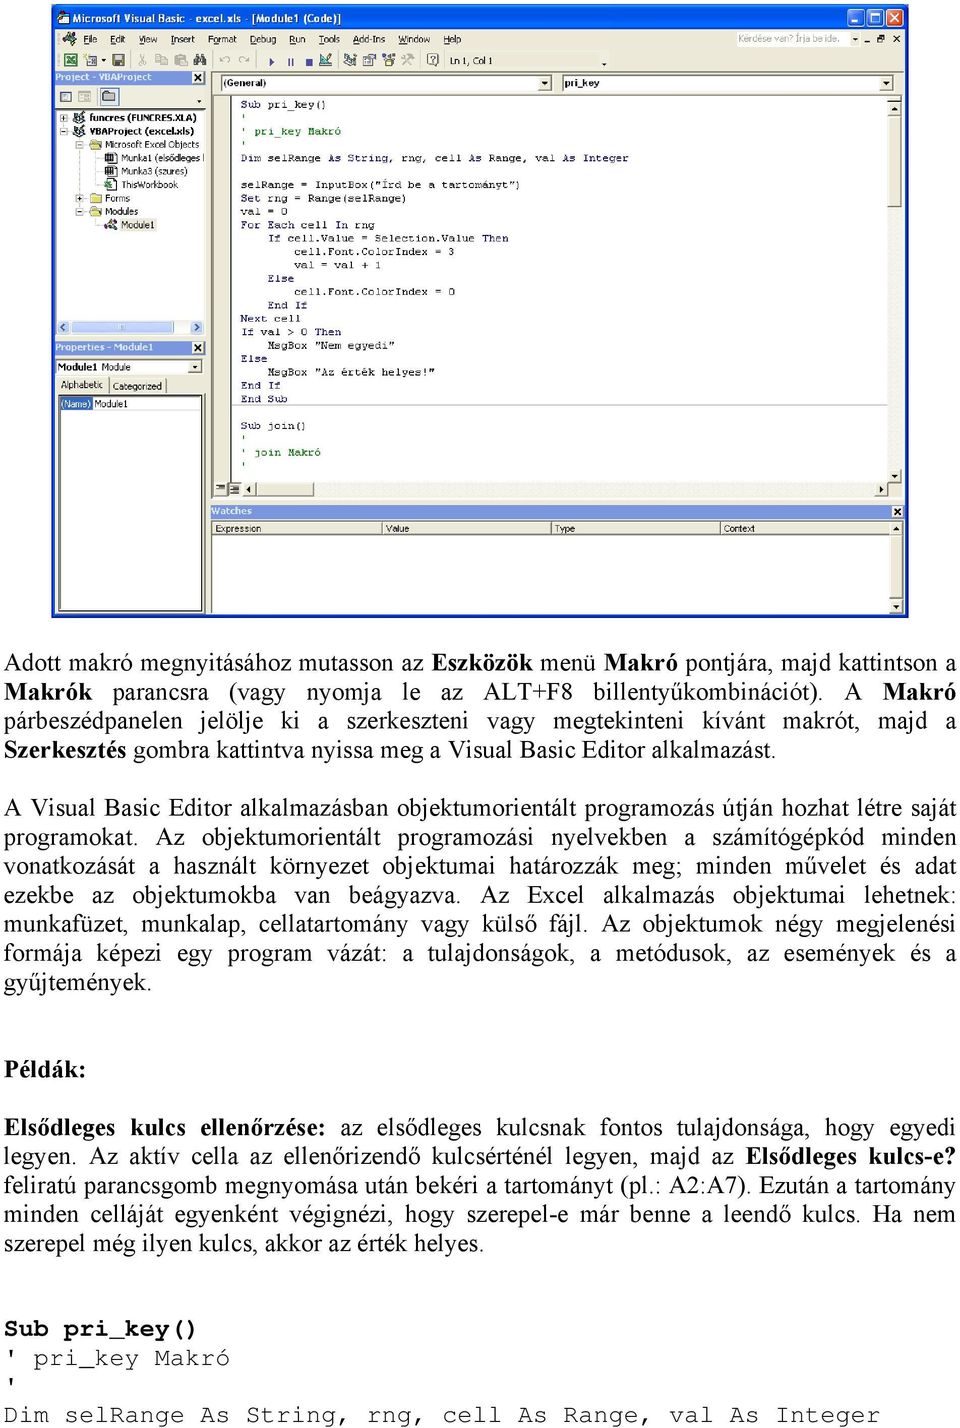 A Visual Basic Editor alkalmazásban objektumorientált programozás útján hozhat létre saját programokat.